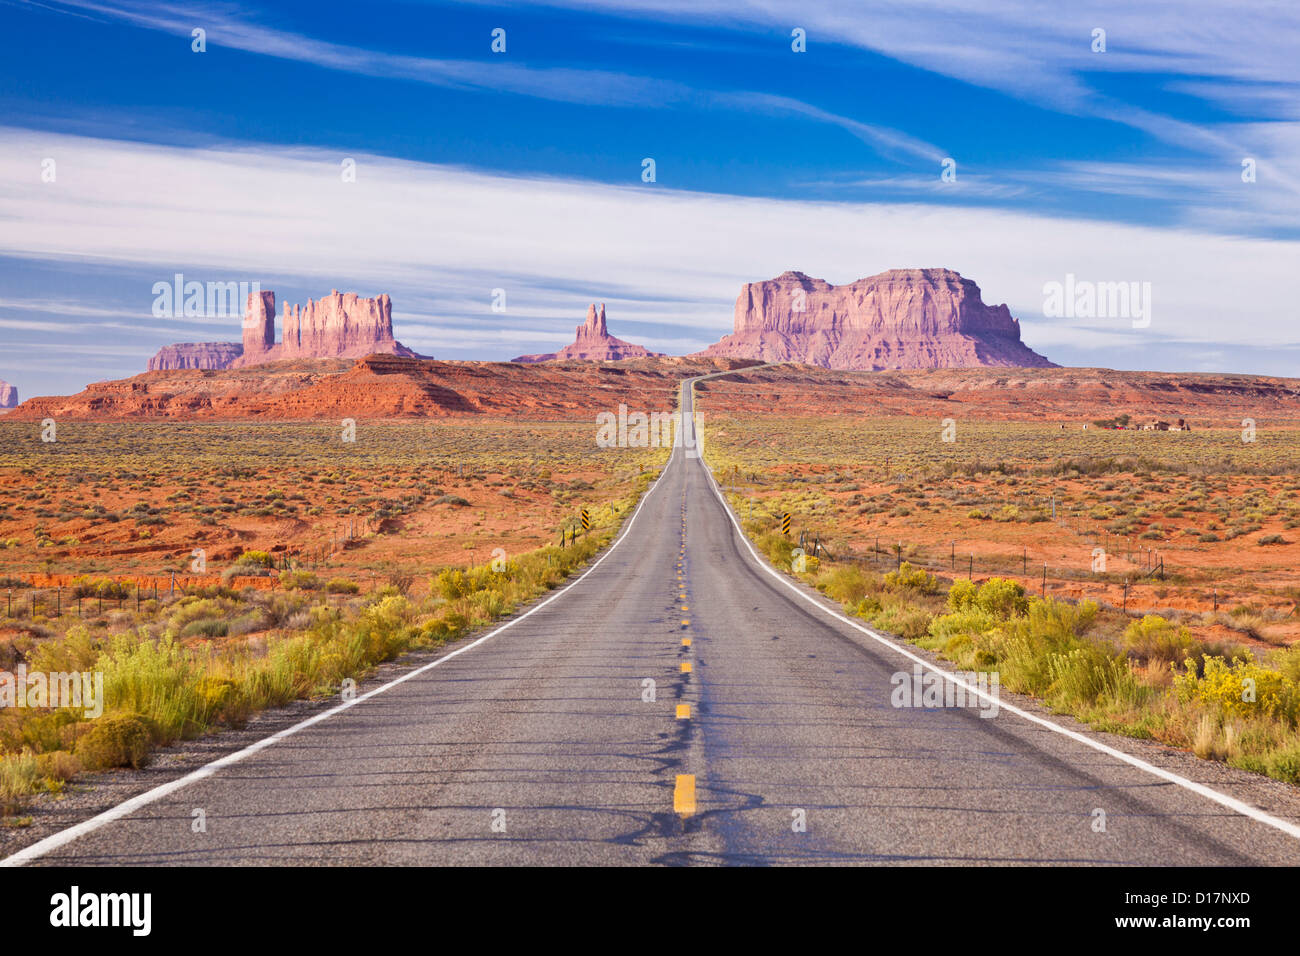 Ikonische Bild von der Straße zum Monument Valley Navajo Tribal Park, Utah USA Vereinigte Staaten von Amerika Stockfoto